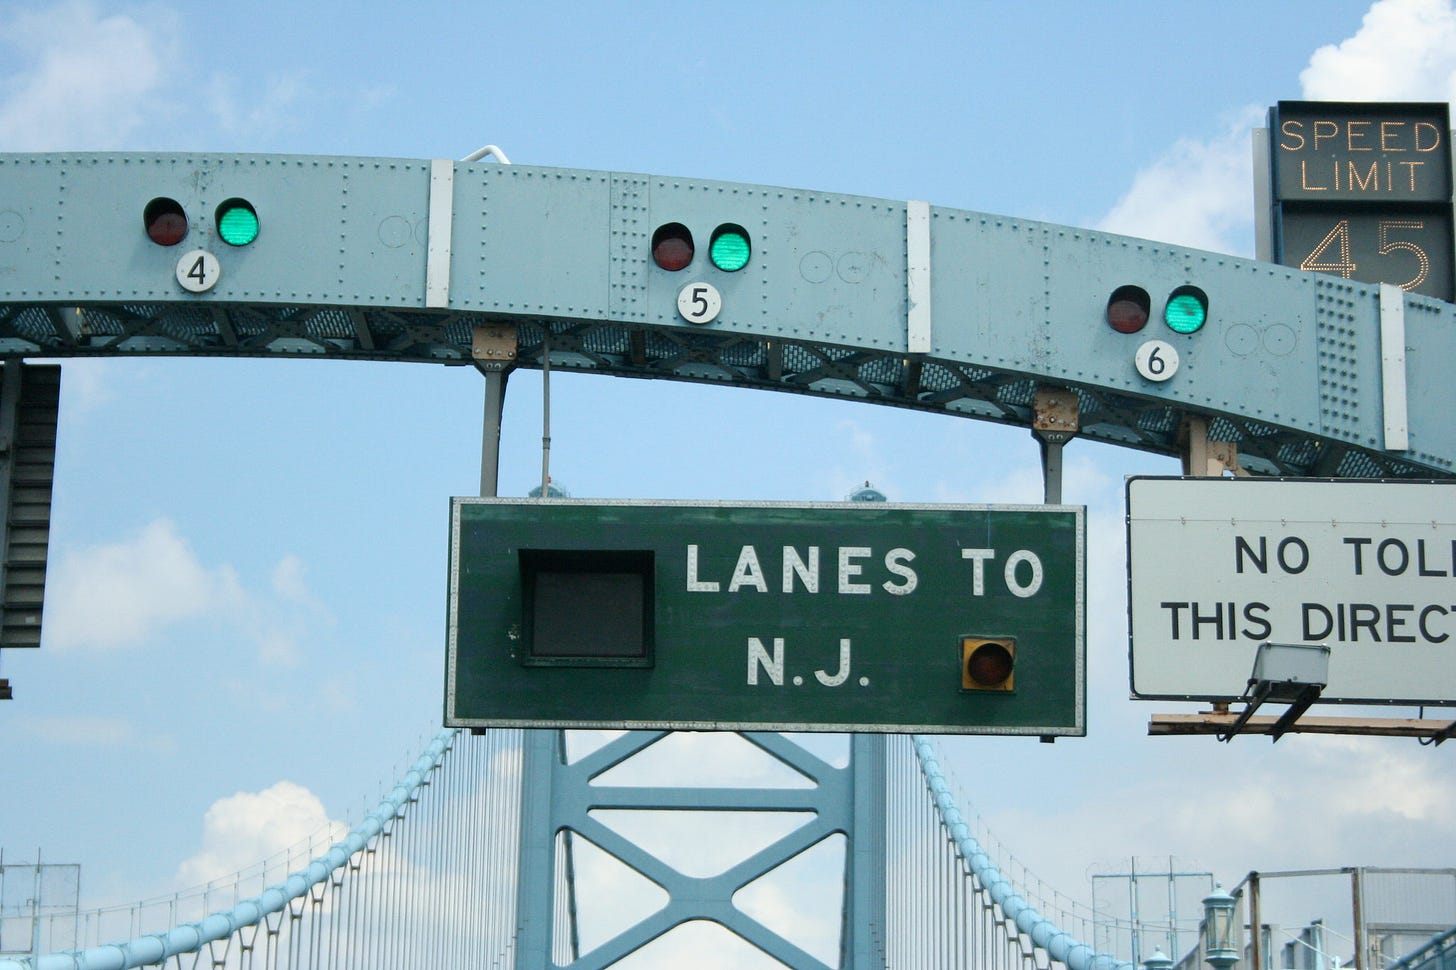 'Lanes to N.J.' sign